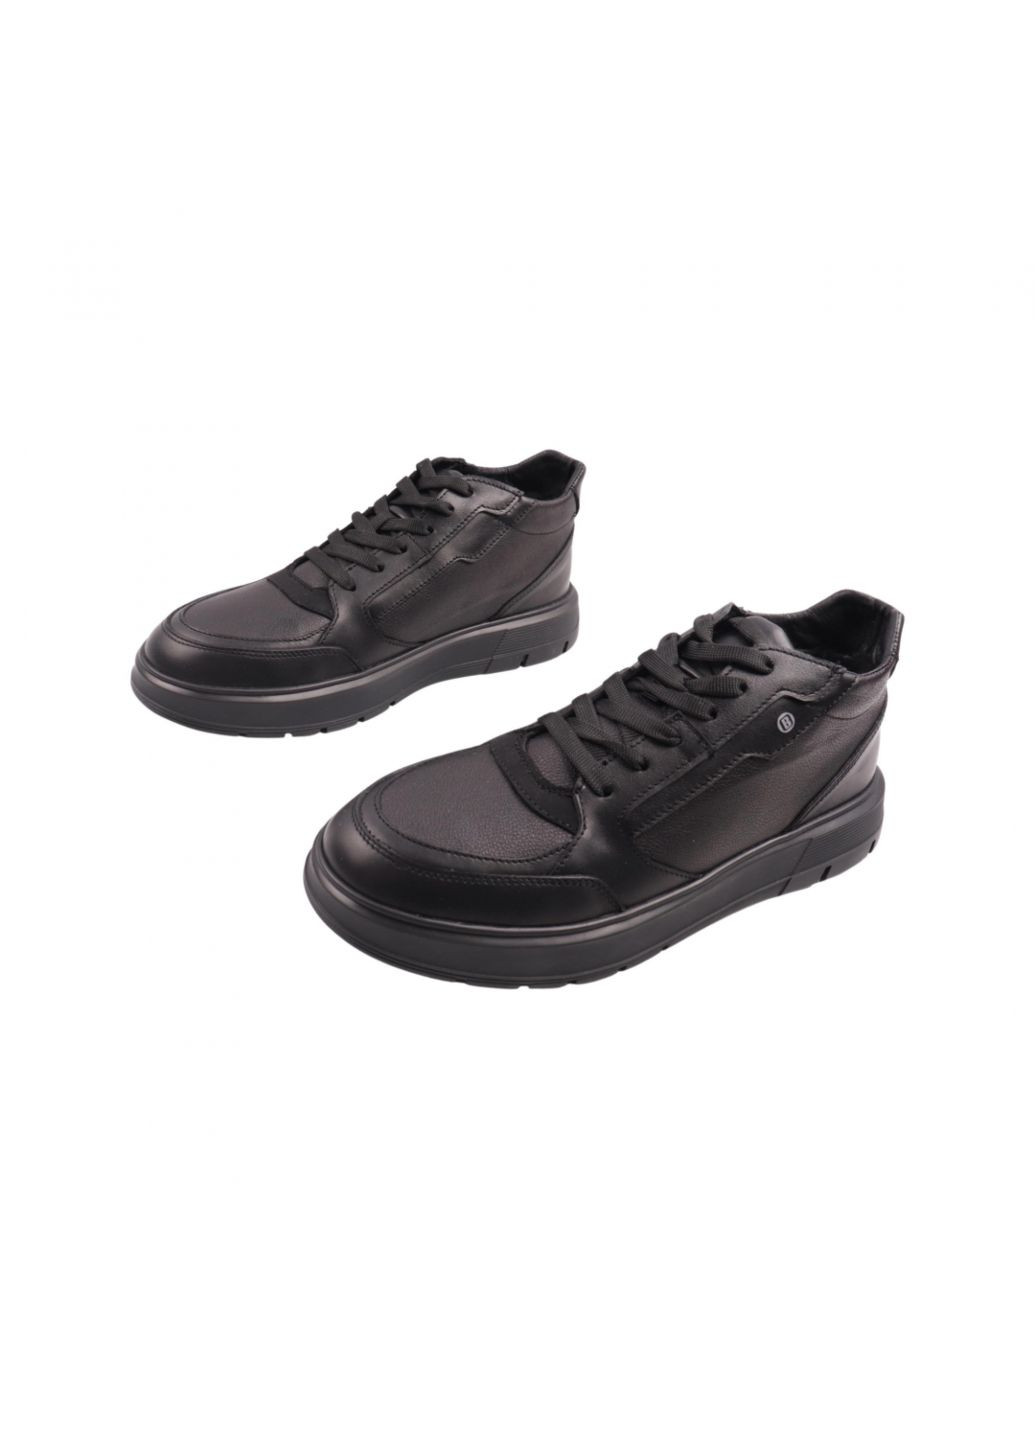 Черные ботинки мужские черные натуральная кожа Brave